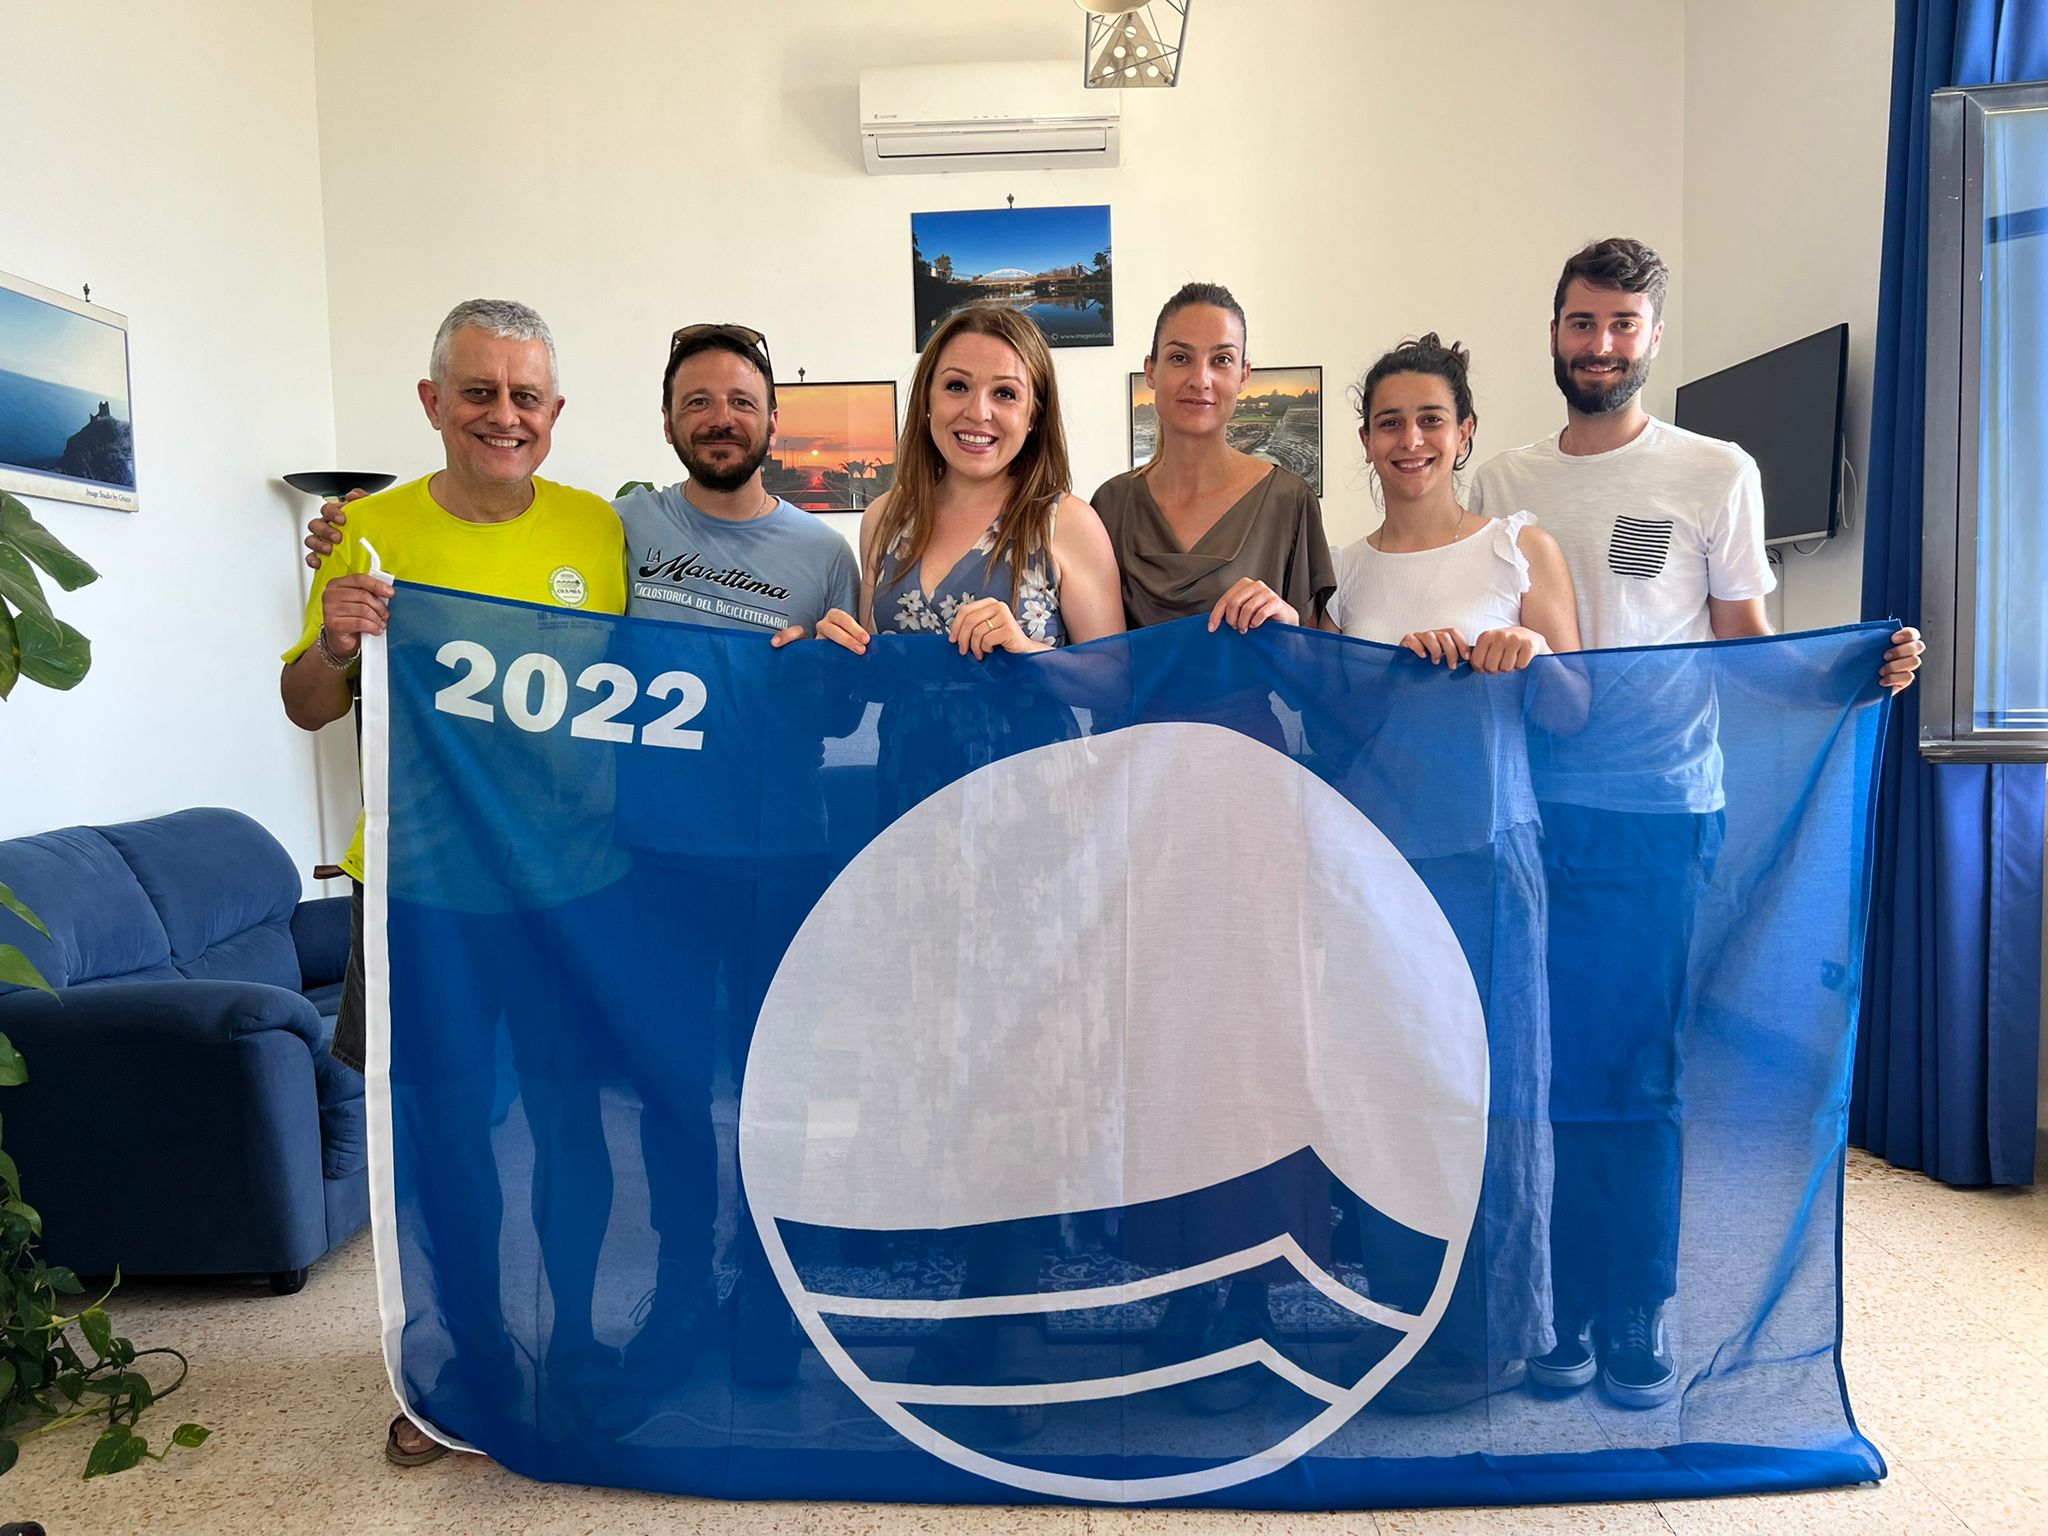 Bandiera Blu 2022  “2 + milioni di km” – Maciniamo chilometri per un sorriso